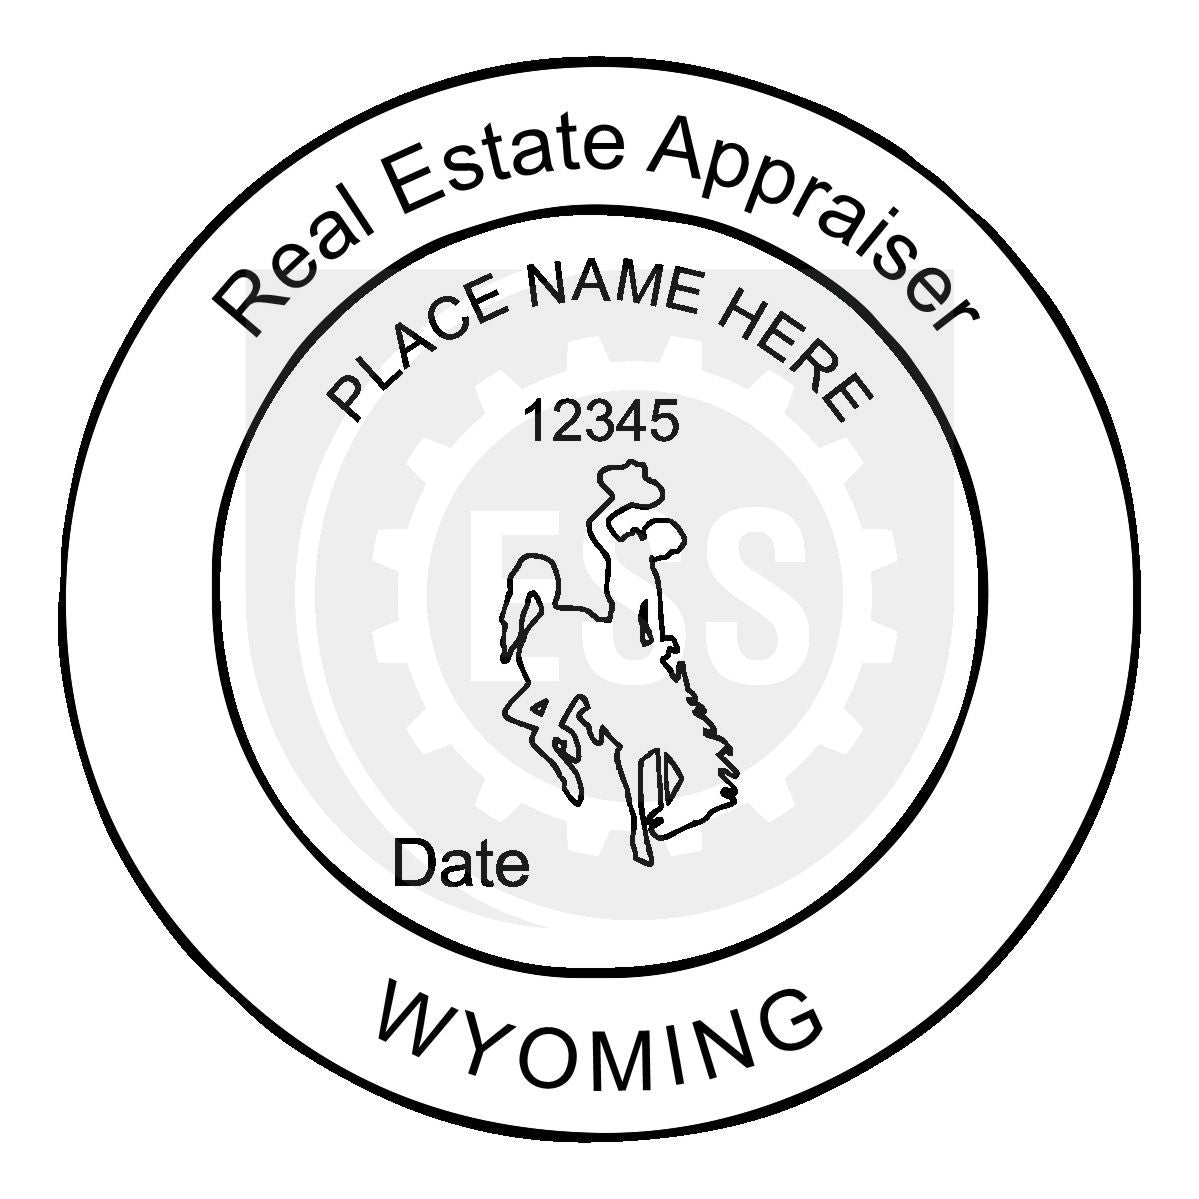 Wyoming Real Estate Appraiser Seal Setup